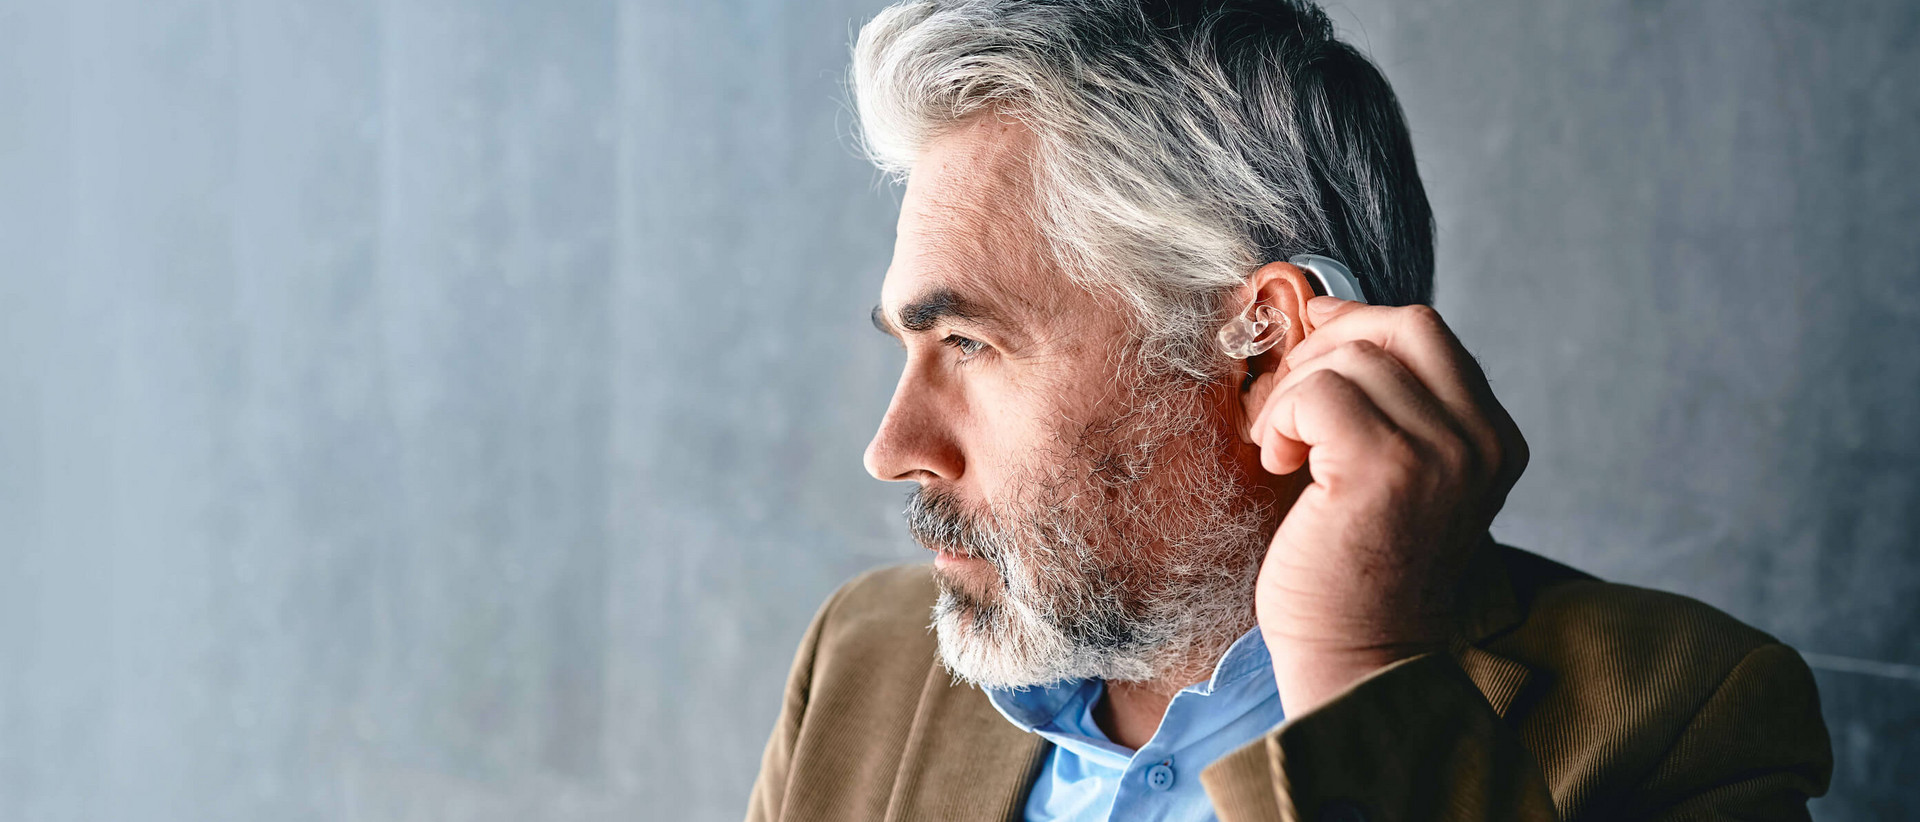 Ein Mann mit grauen Haaren und Drei-Tage-Bart ist im Profil zu sehen. In seinem linken Ohr trägt er ein Hörgerät.